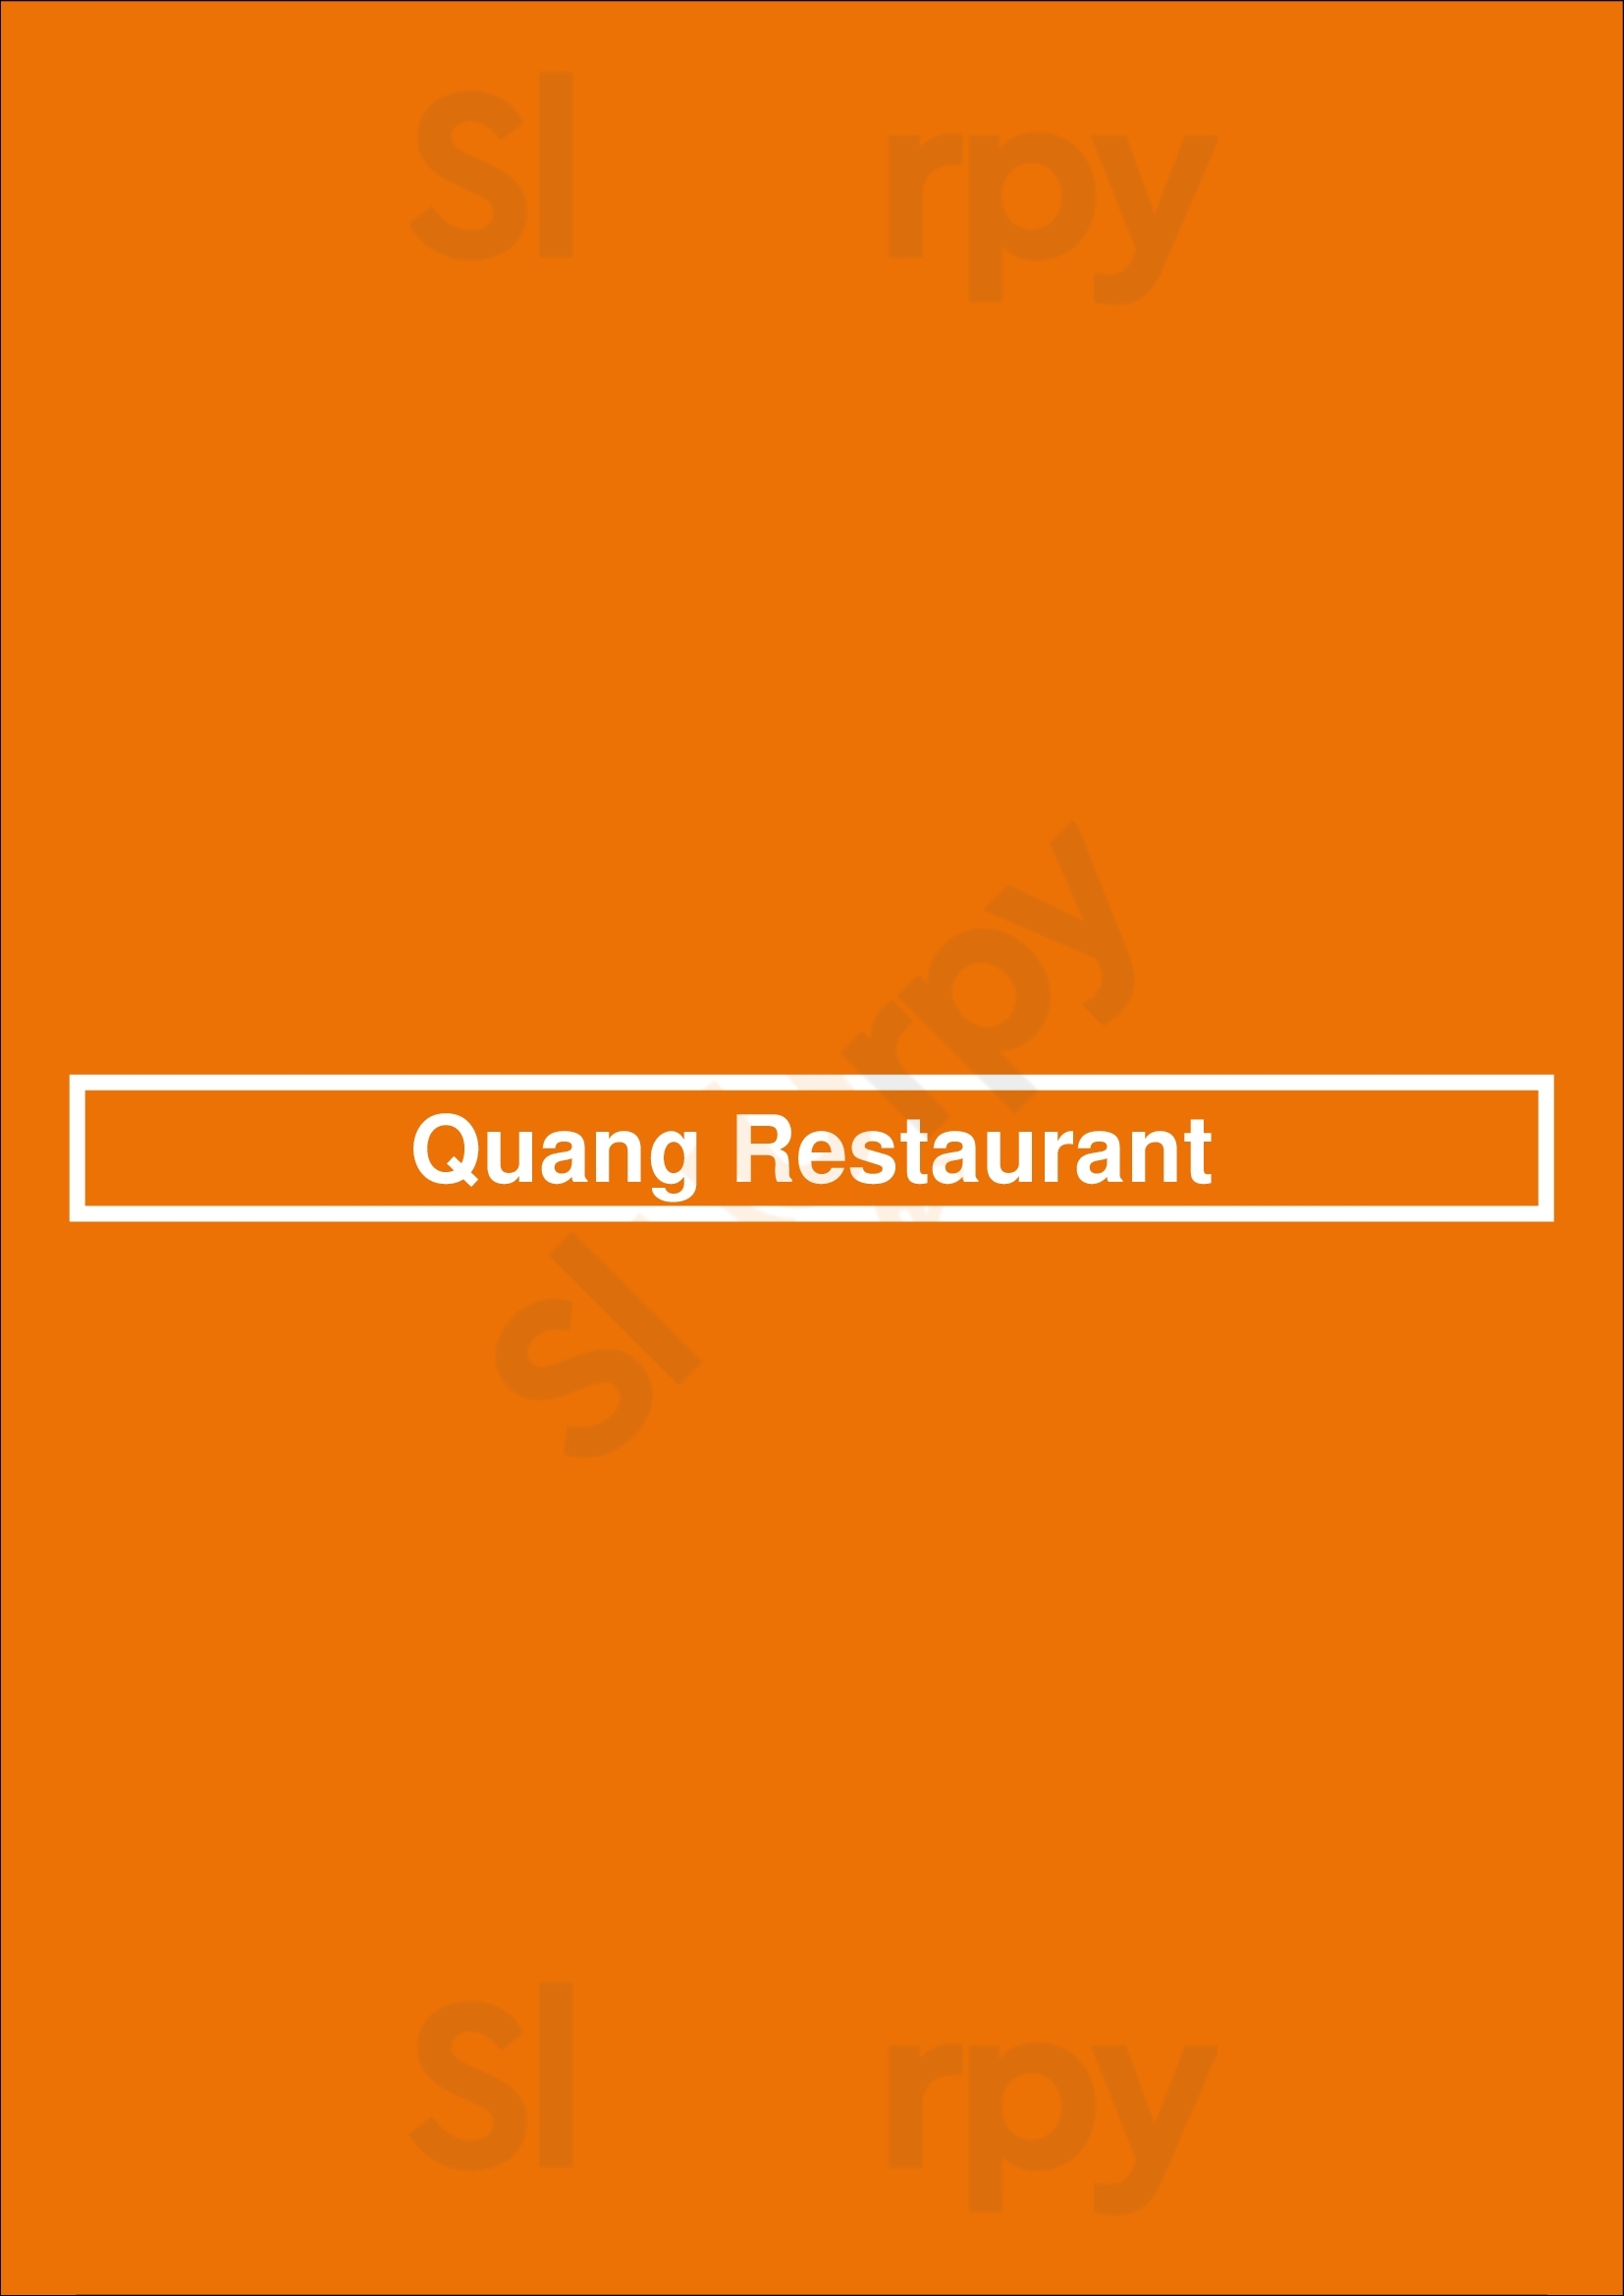 Quang Restaurant Minneapolis Menu - 1